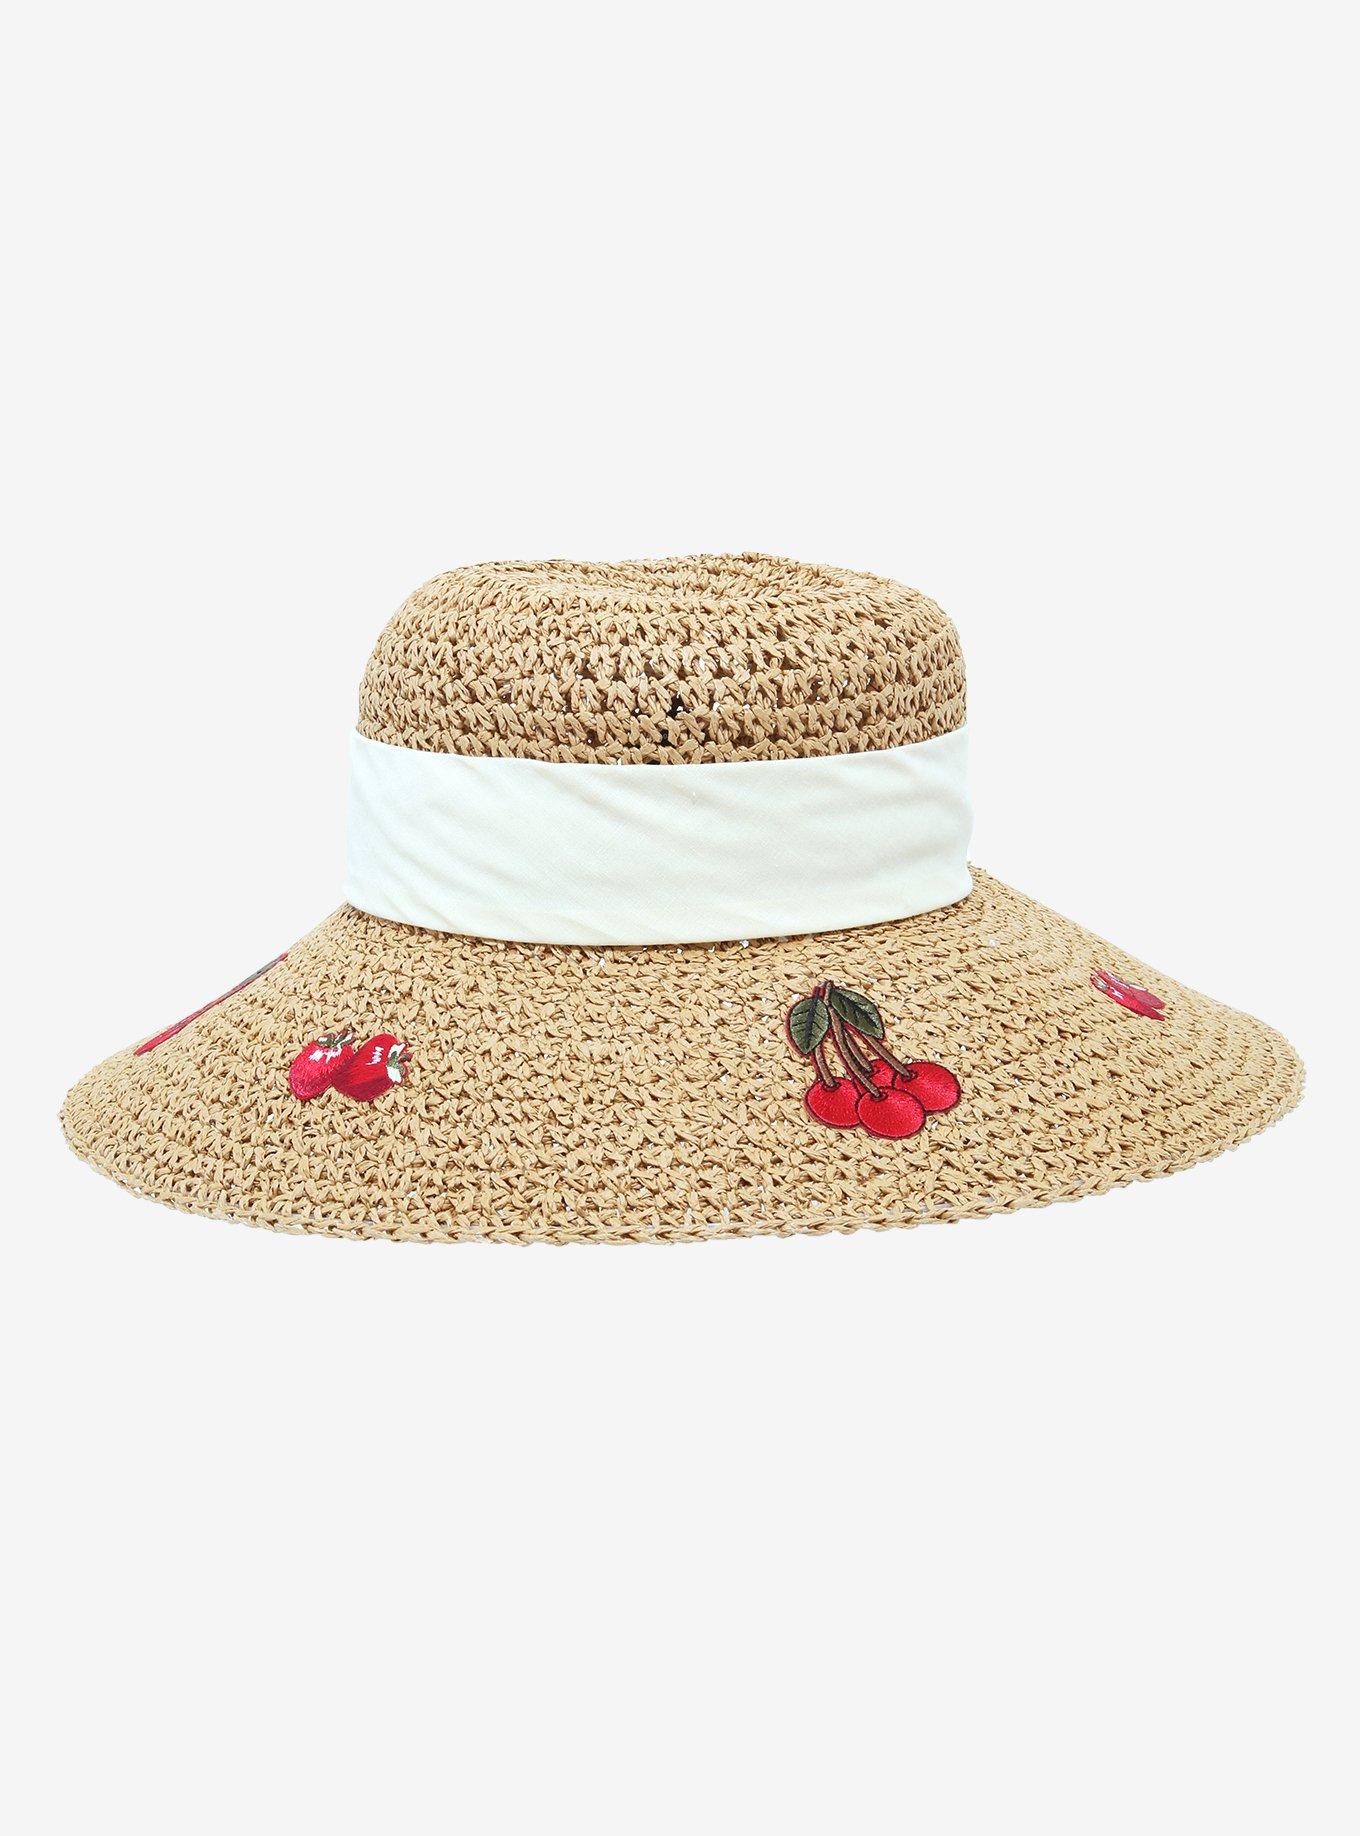 Strawberry Cherry Floppy Straw Hat, , hi-res